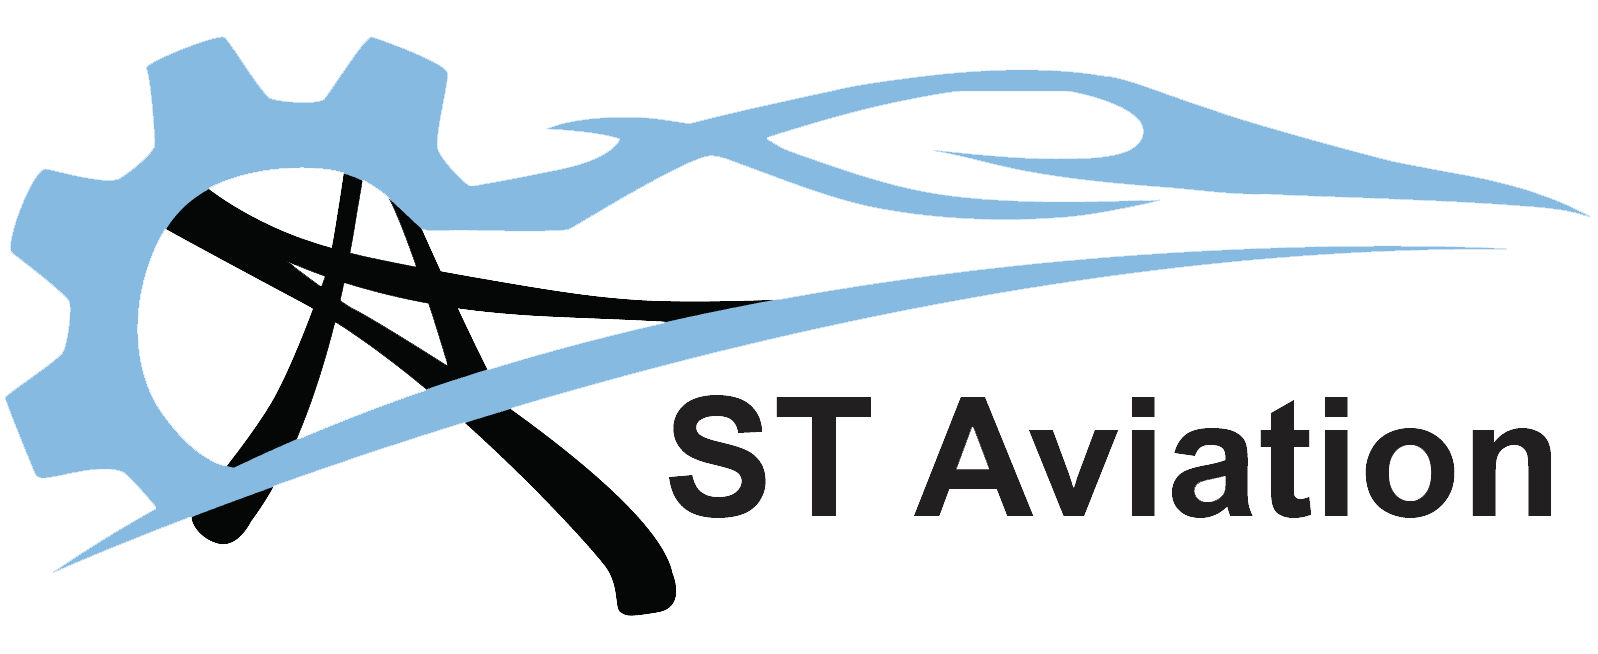 Centrair SNC-34C Alliance 34 - F-CIHG (Association Aéronautique d